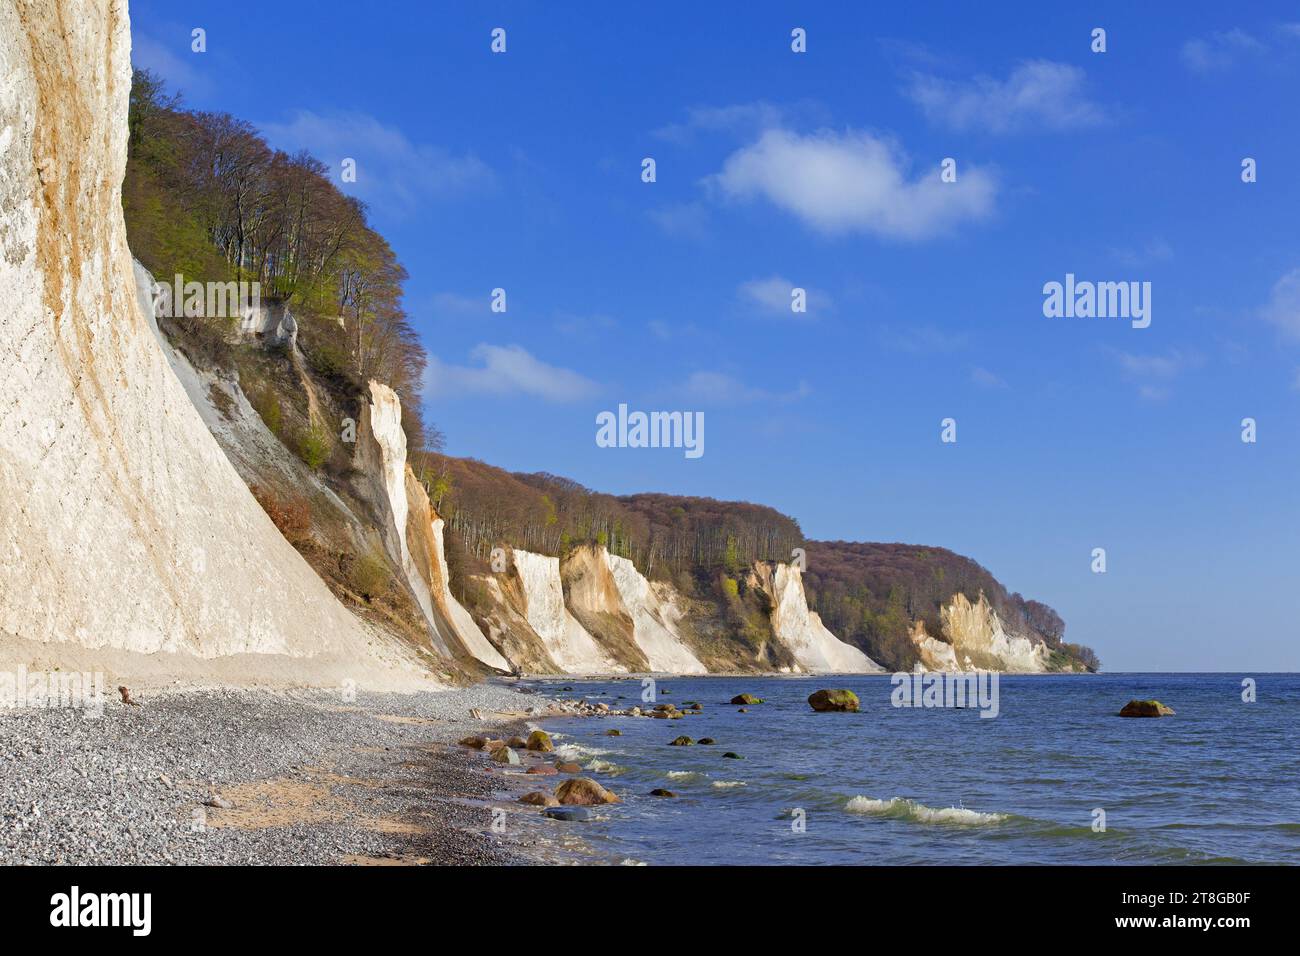 Scogliere di gesso bianche erose e spiaggia di ciottoli nel Parco Nazionale di Jasmund sull'Isola di Rugen nel Mar Baltico, Meclemburgo-Pomerania, Germania Foto Stock